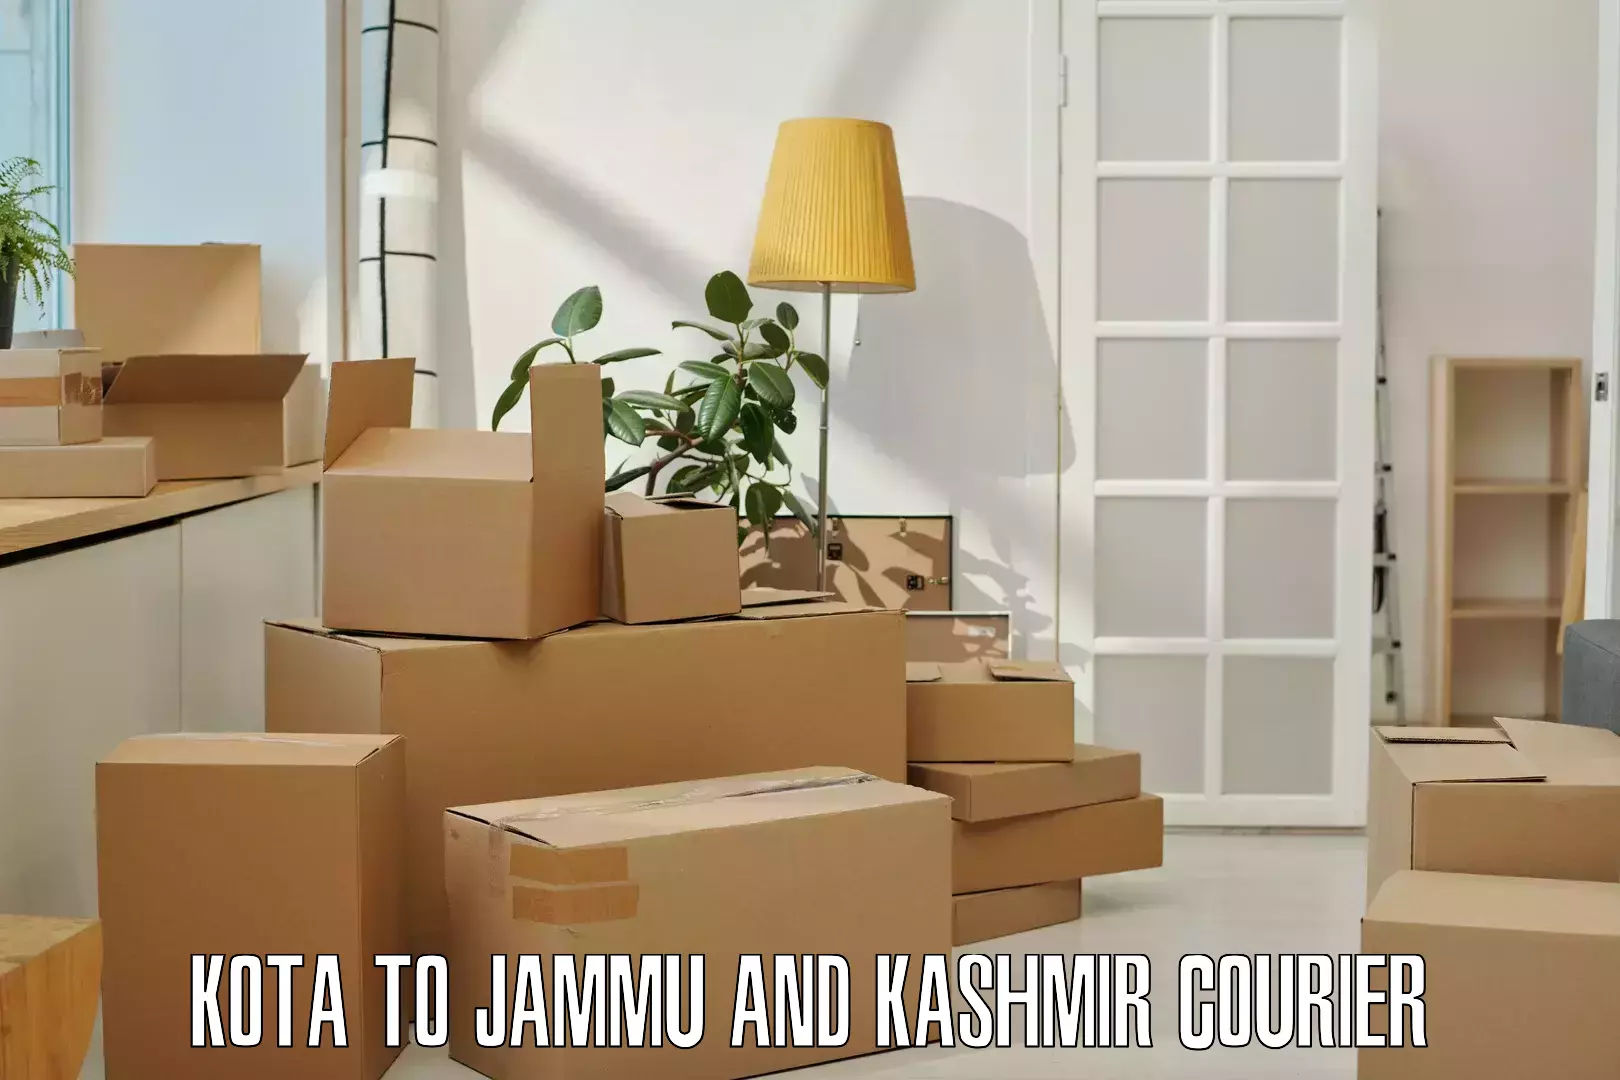 Advanced shipping technology Kota to University of Jammu